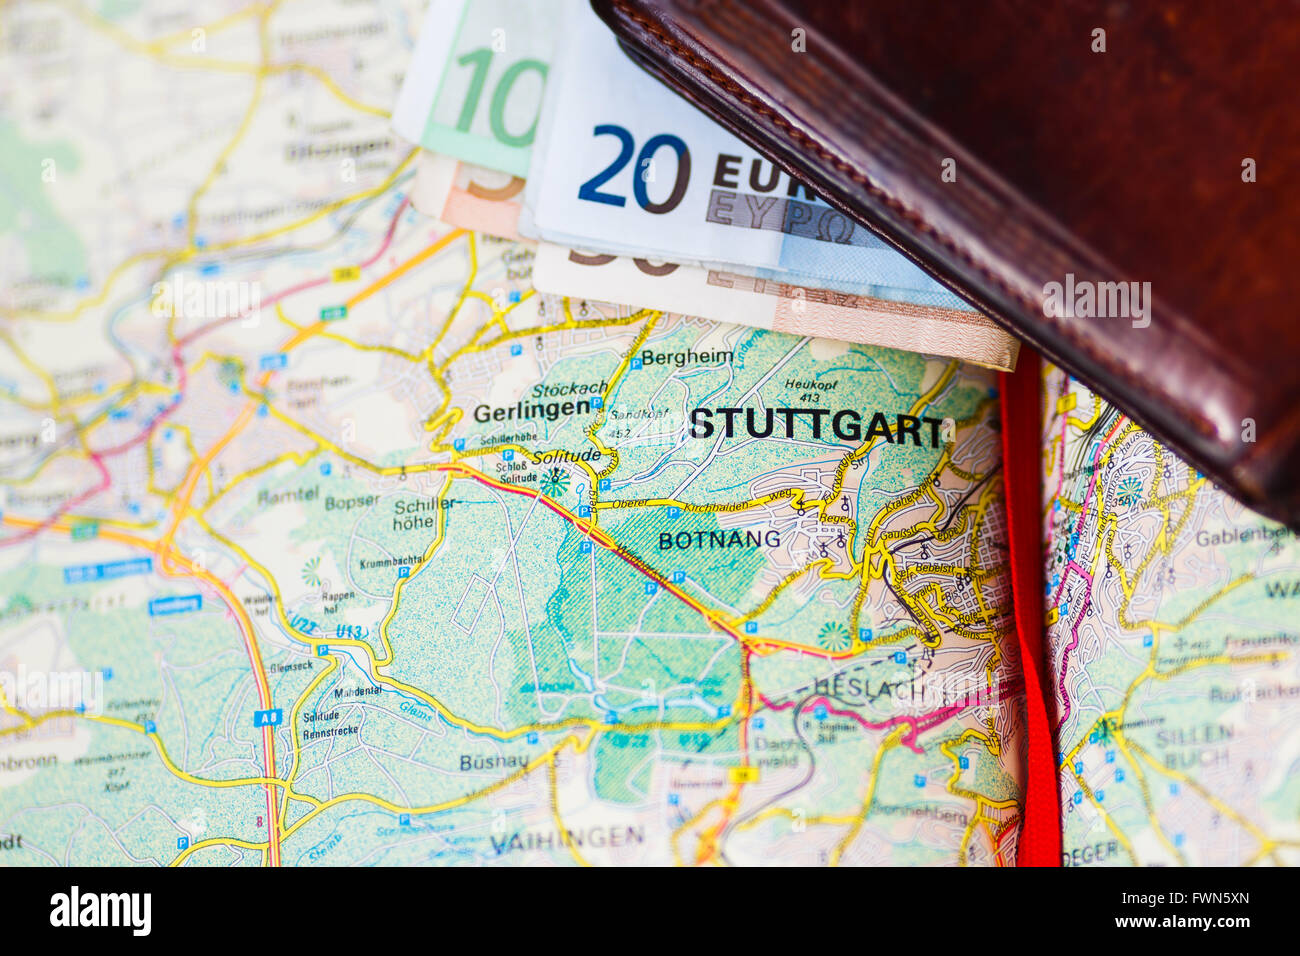 Los billetes dentro de billetera en un mapa geográfico de Stuttgart, Alemania Foto de stock